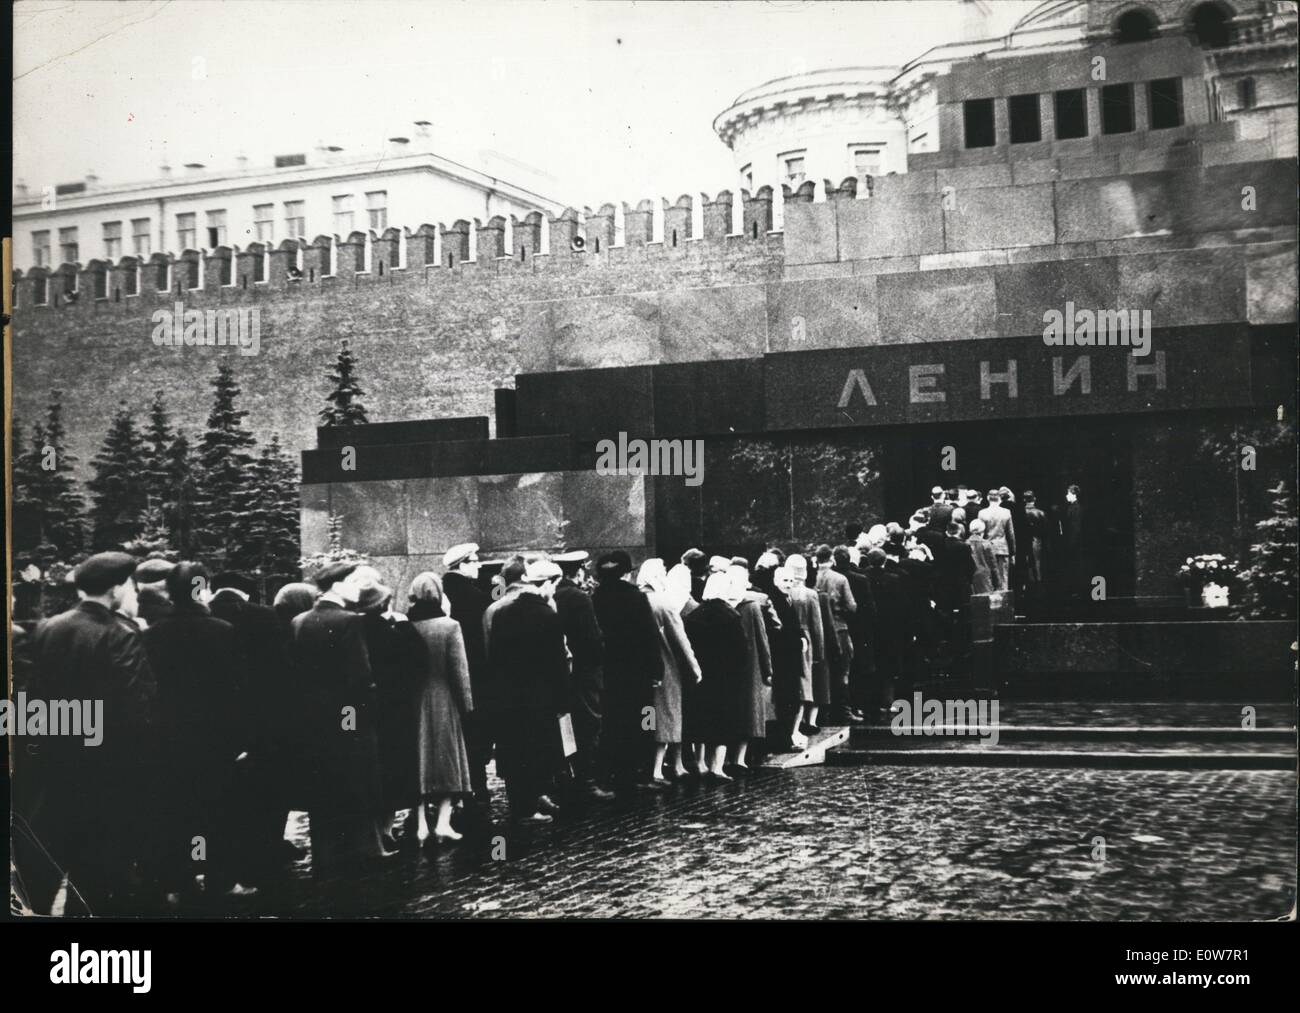 11. November 1961 - Kreml-Mausoleum wieder geöffnet: der Kreml-Mausoleum in Moskau ist wieder für Besucher geöffnet, nachdem der Körper von Josef Stalin aus dem Grab entfernt worden ist. Sogar sein Name verschwand vom Eingang und jetzt nur den Körper und den Namen des Lenin von der Öffentlichkeit gesehen werden können. Nach wie vor stehen lange Schlangen von Menschen vor dem Mausoleum. Stockfoto